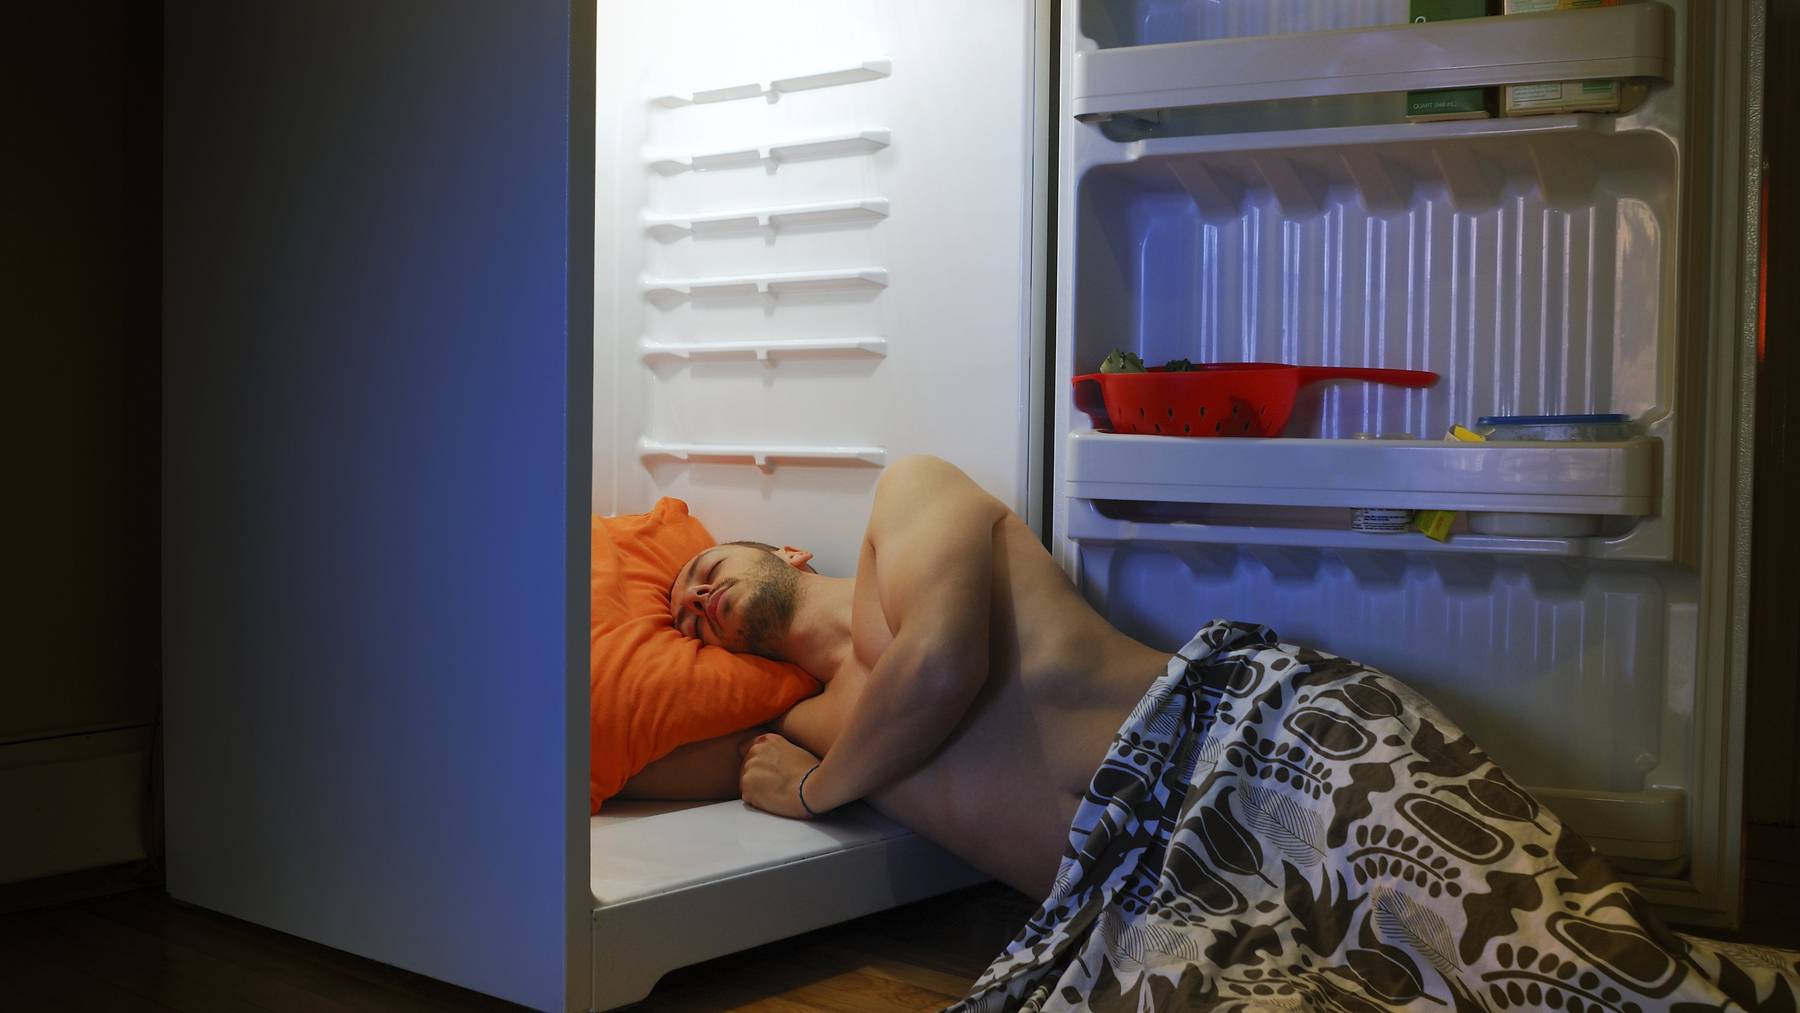 Sicher unbequem und nicht gerade umweltbewusst, aber eine mögliche Lösung: Schlafen vor dem Kühlschrank.